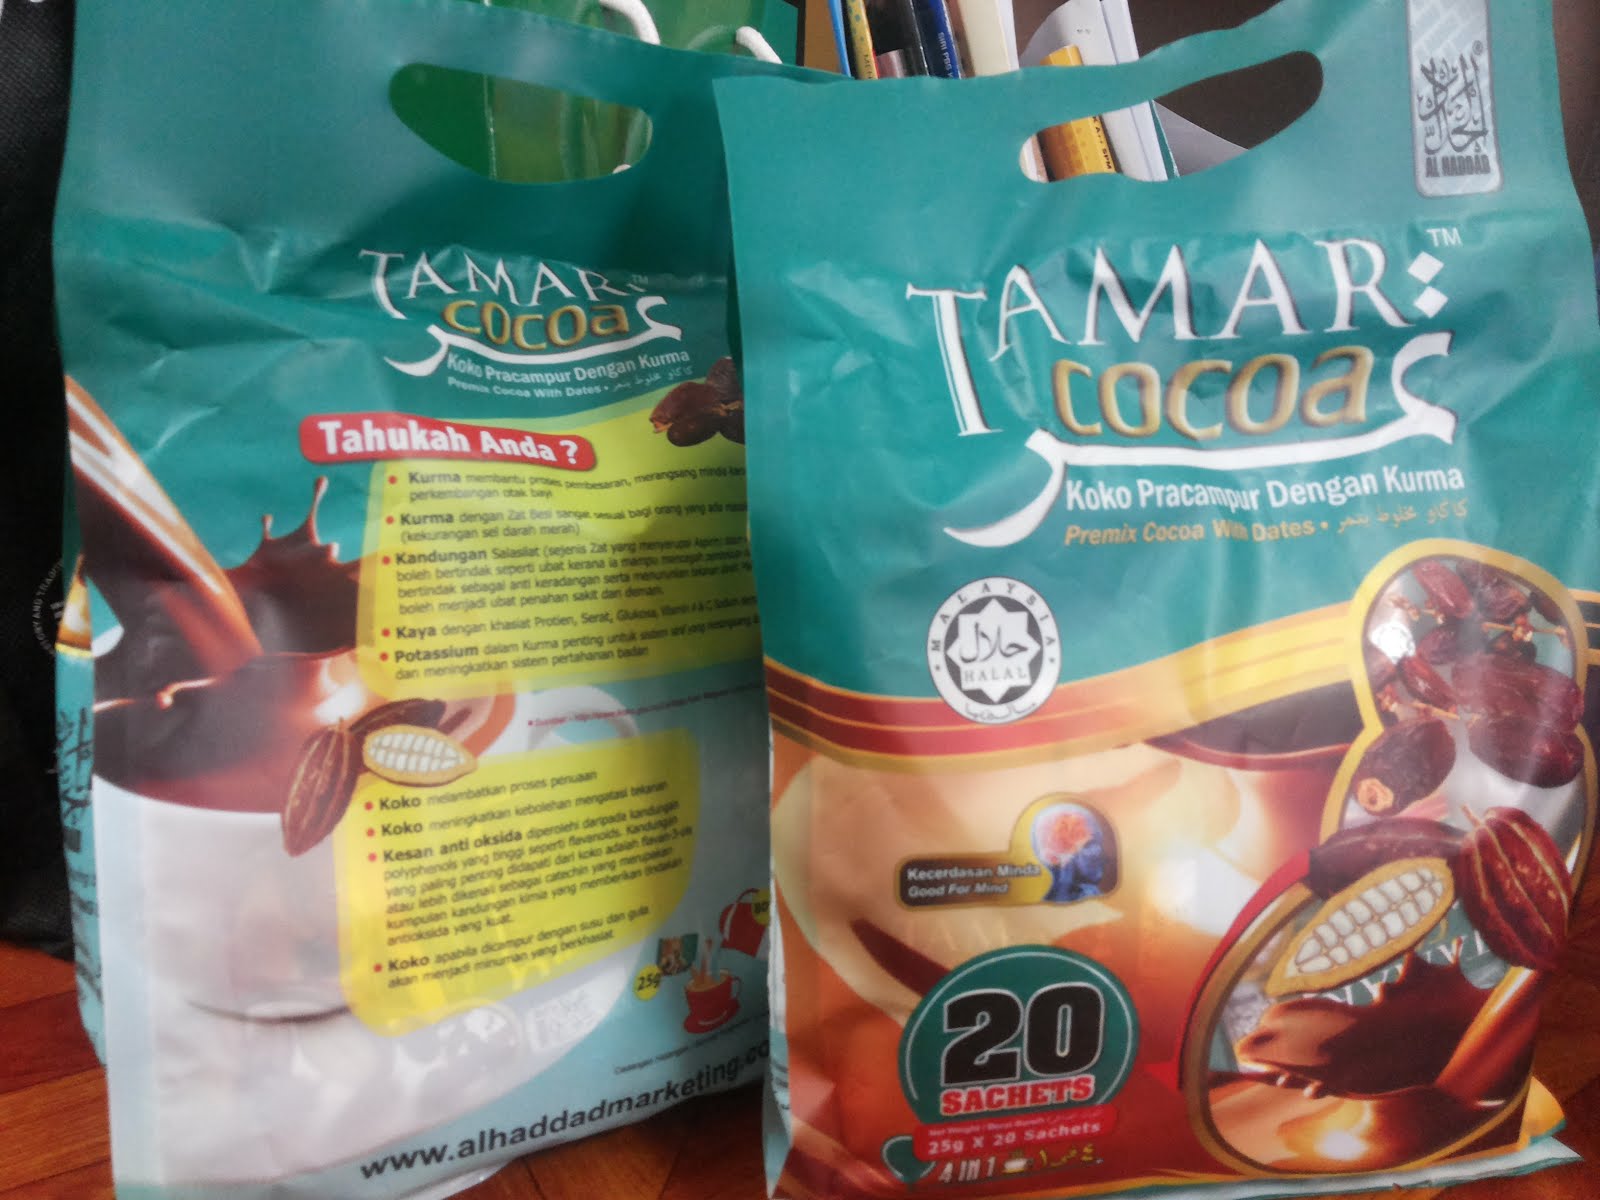 Tammar Cocoa